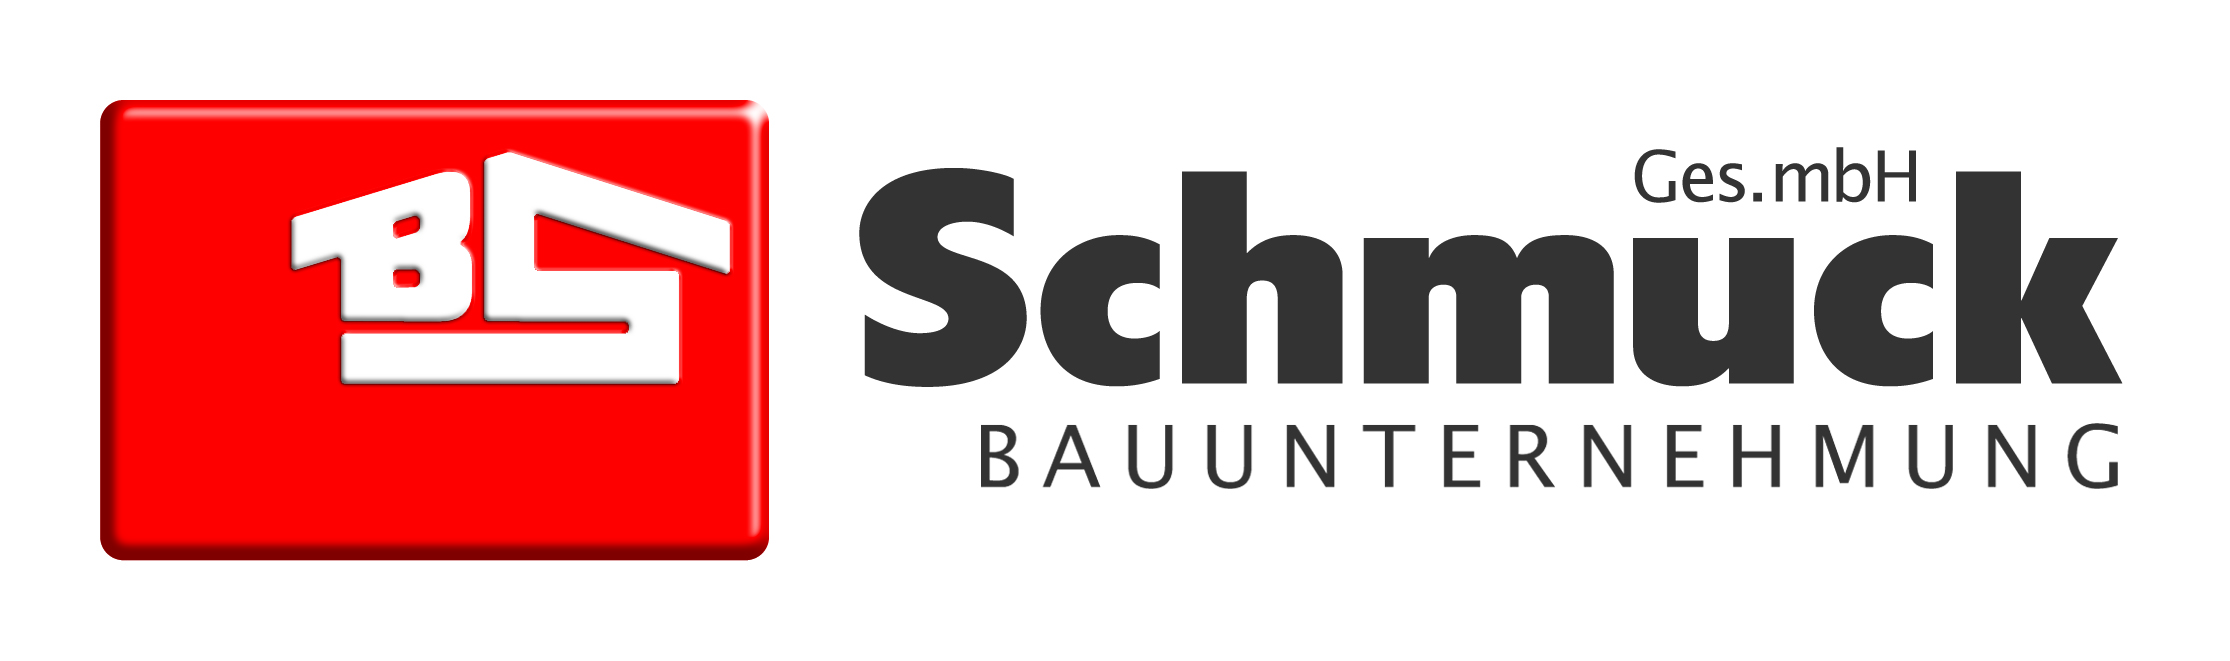 Logo Schmuck